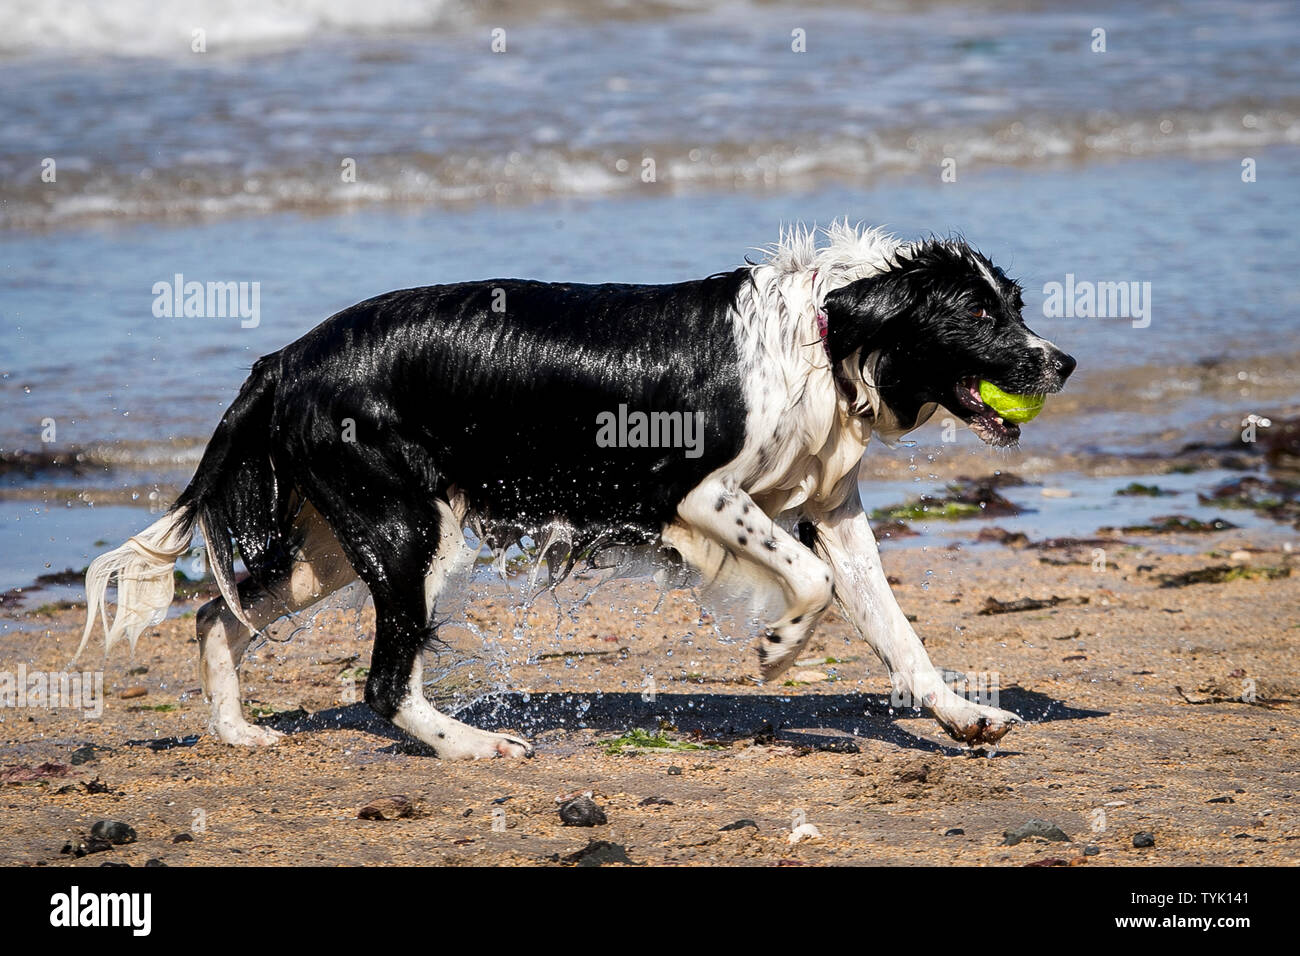 Chupa il Border Collie e Spaniel razza trasversale viene eseguito con un tennis dopo la fuoriuscita di acqua a Helens Bay beach in Irlanda del Nord. Foto Stock